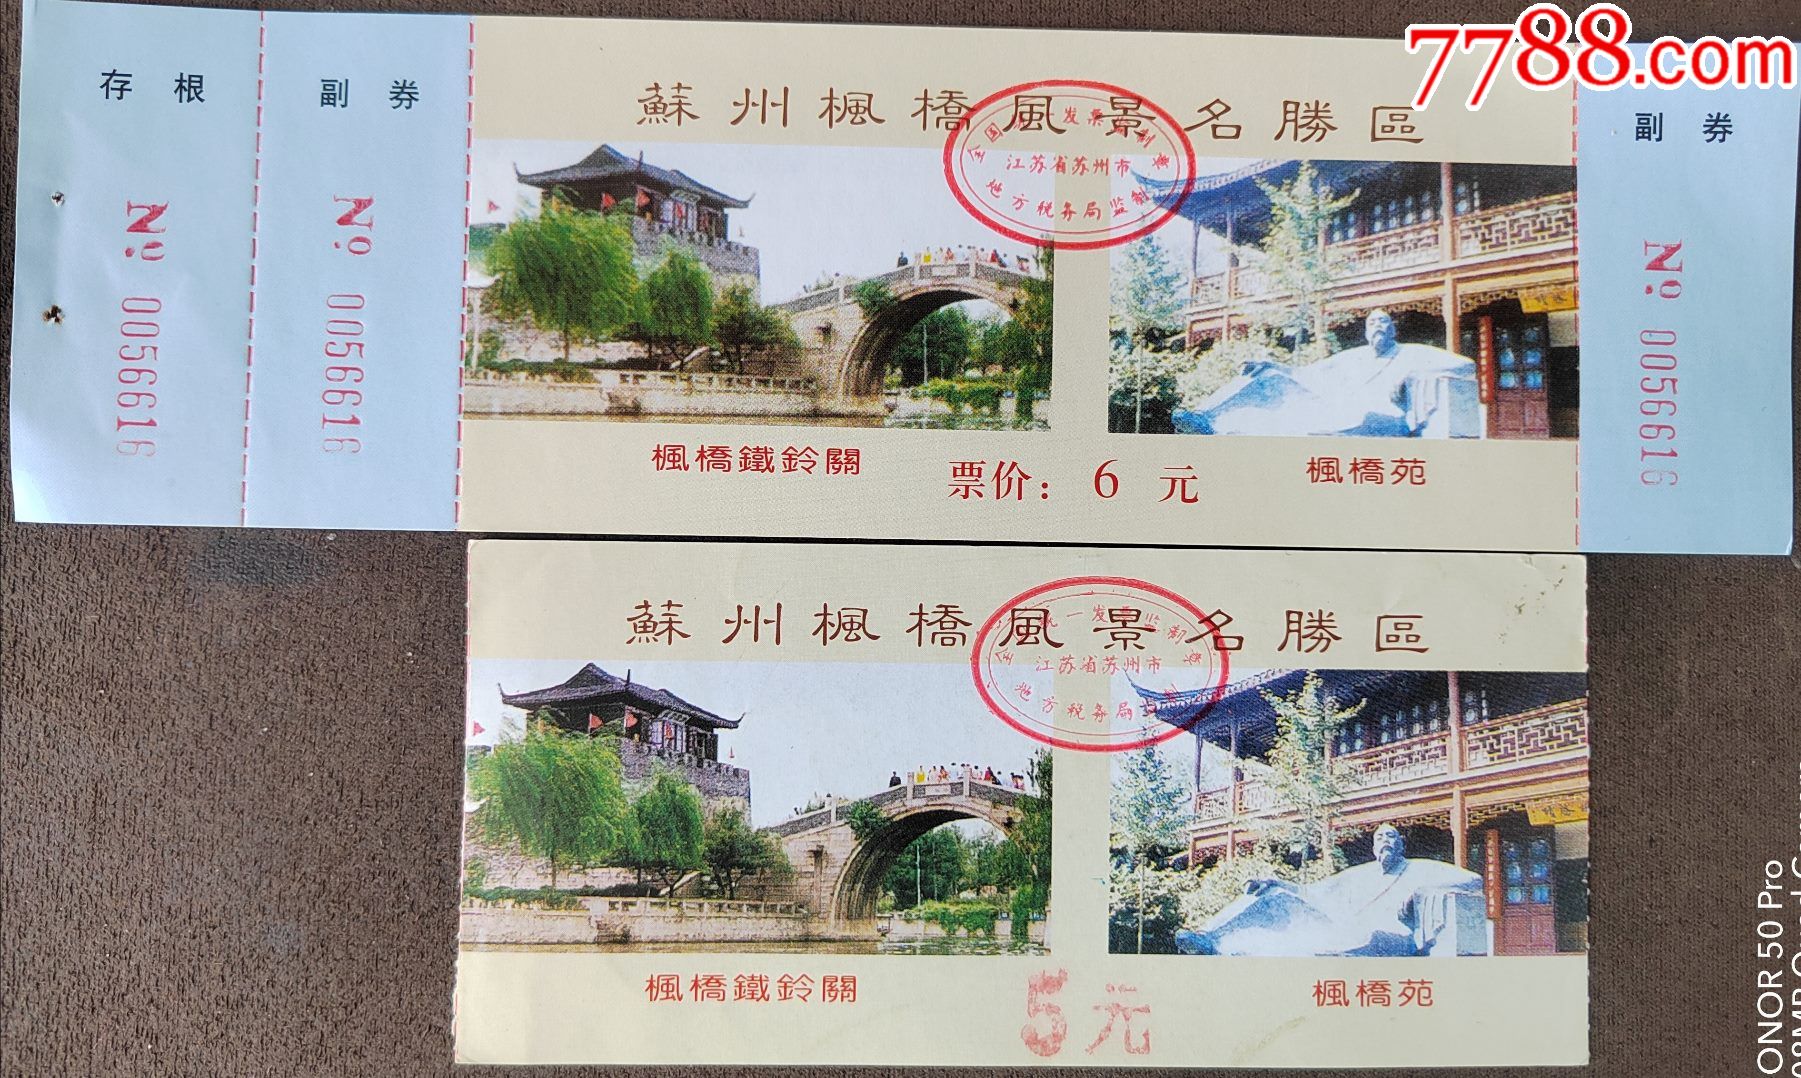 苏州枫桥景区门票图片